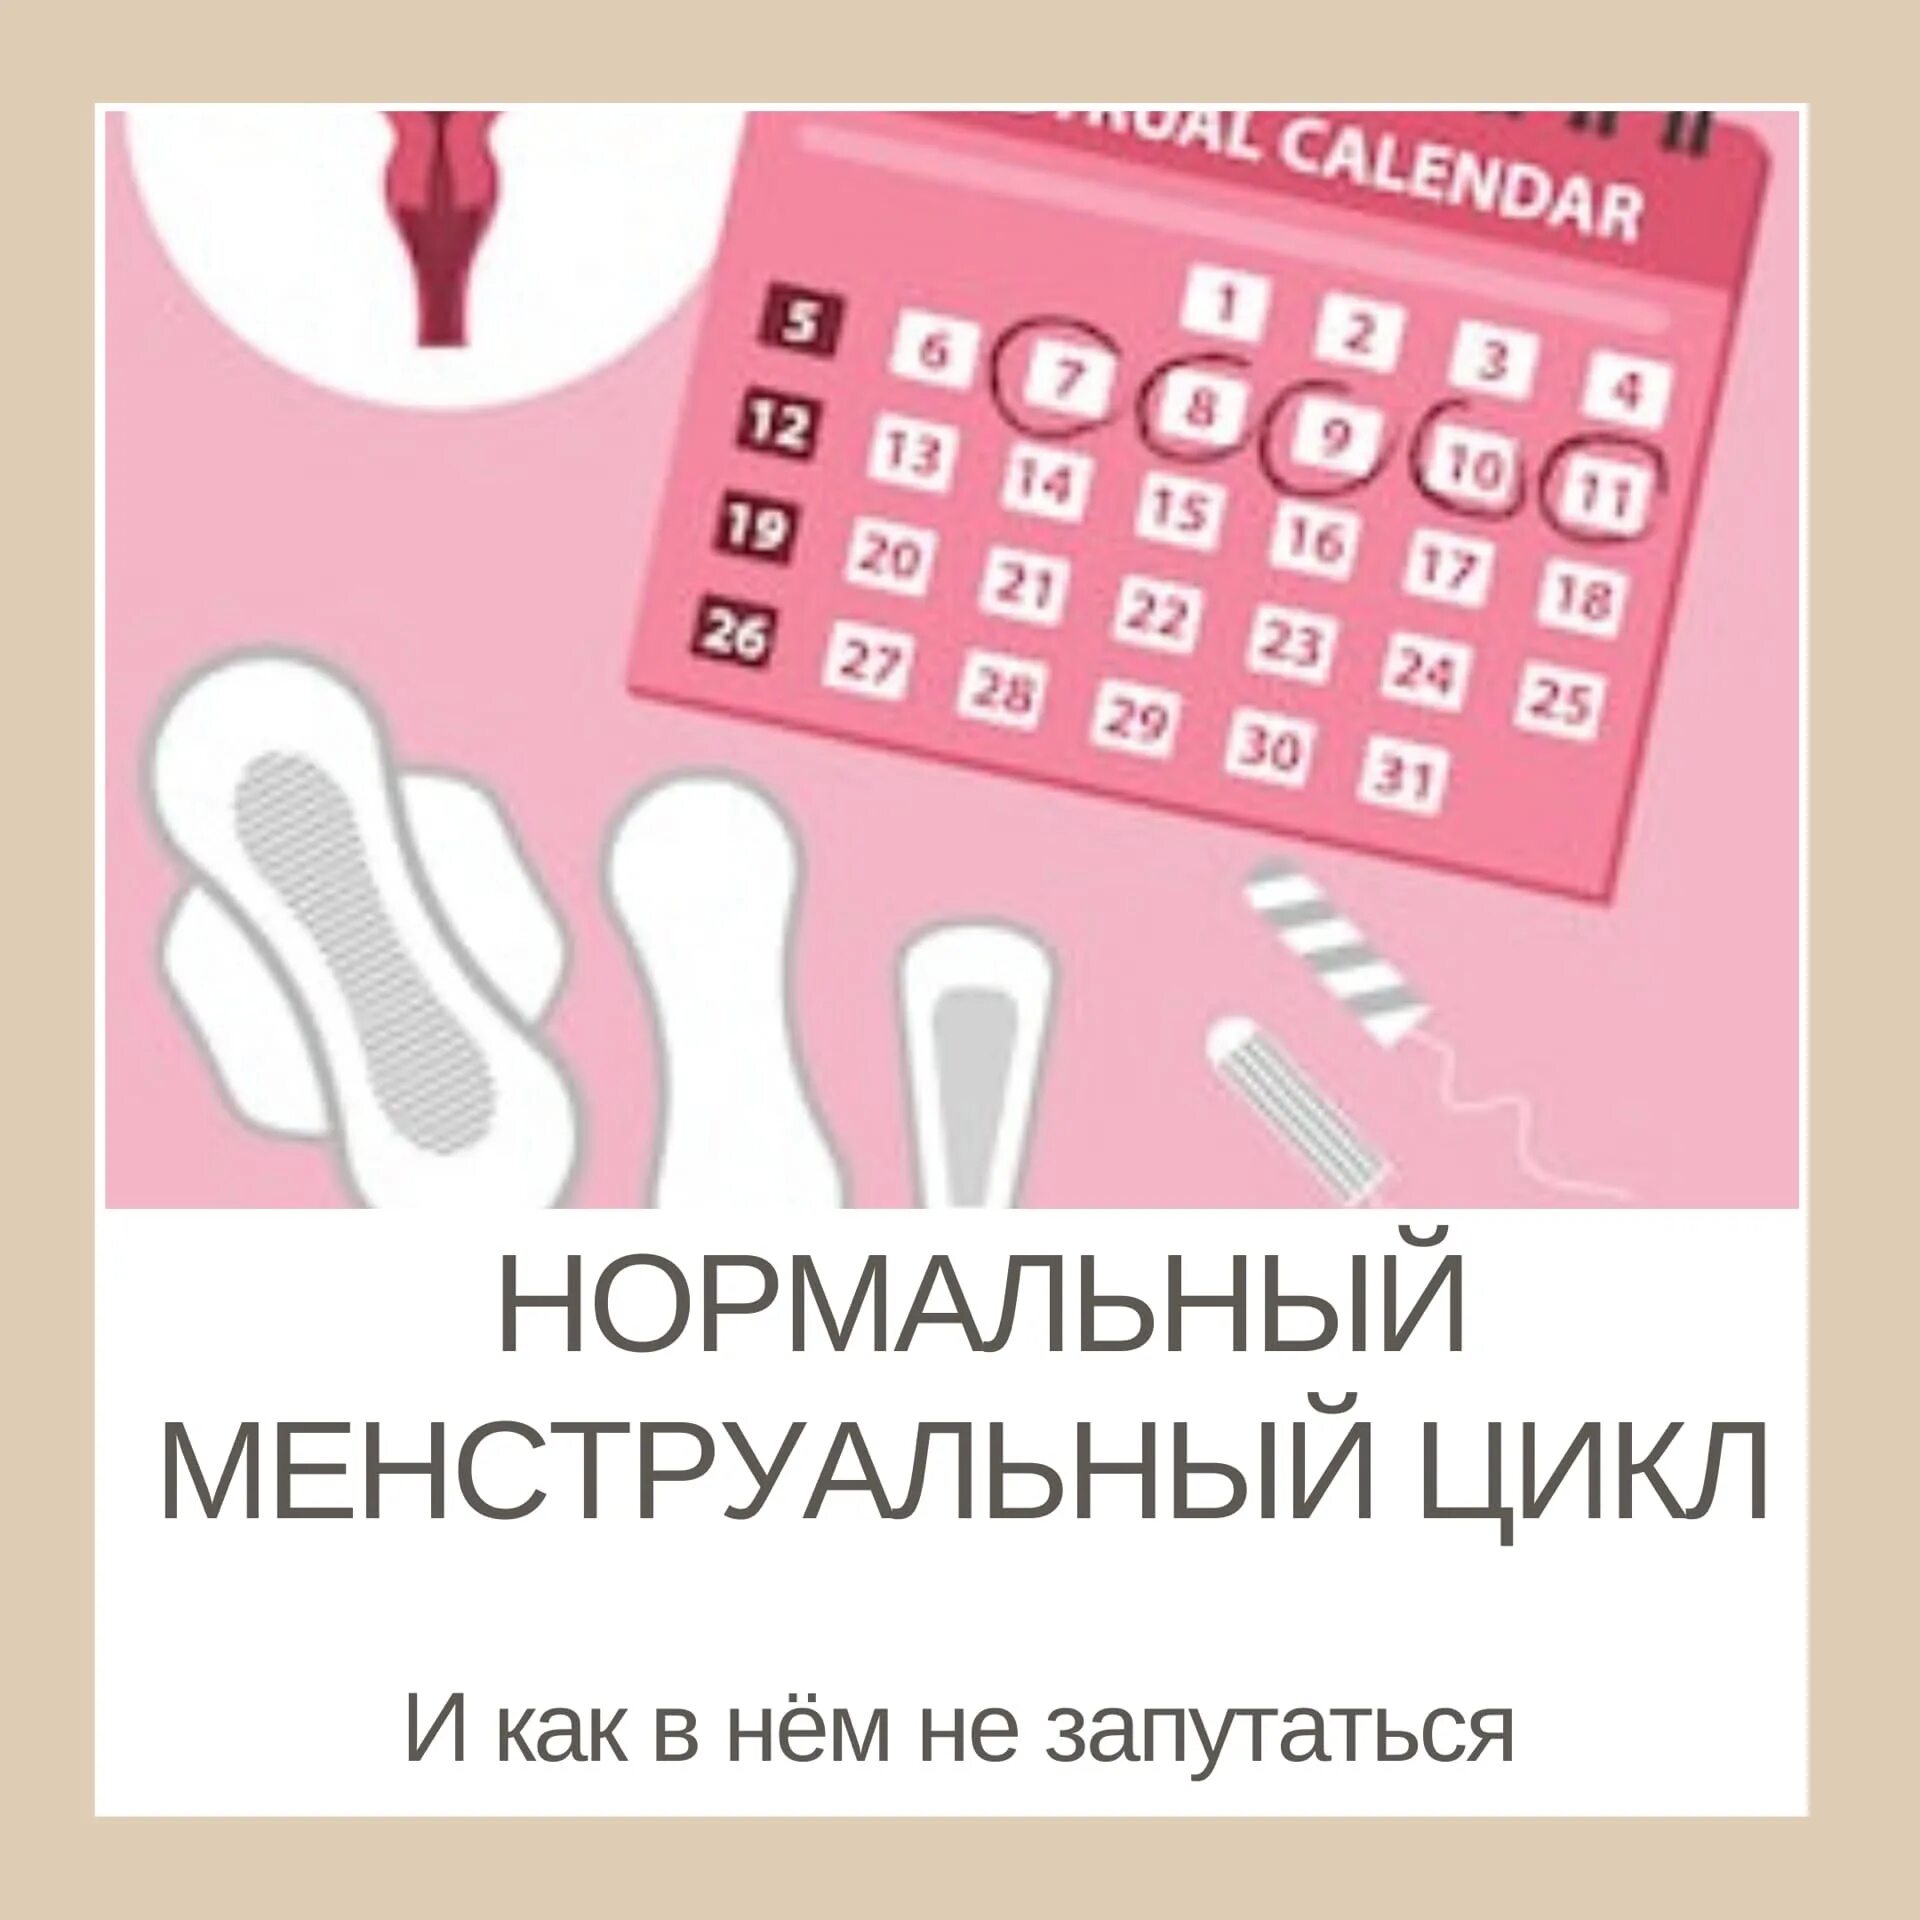 Месячные календарь. Календарь женского здоровья. Гигиена менструационного цикла памятка. Норма менструационного цикла. Рекомендации по ведению менструального календаря.